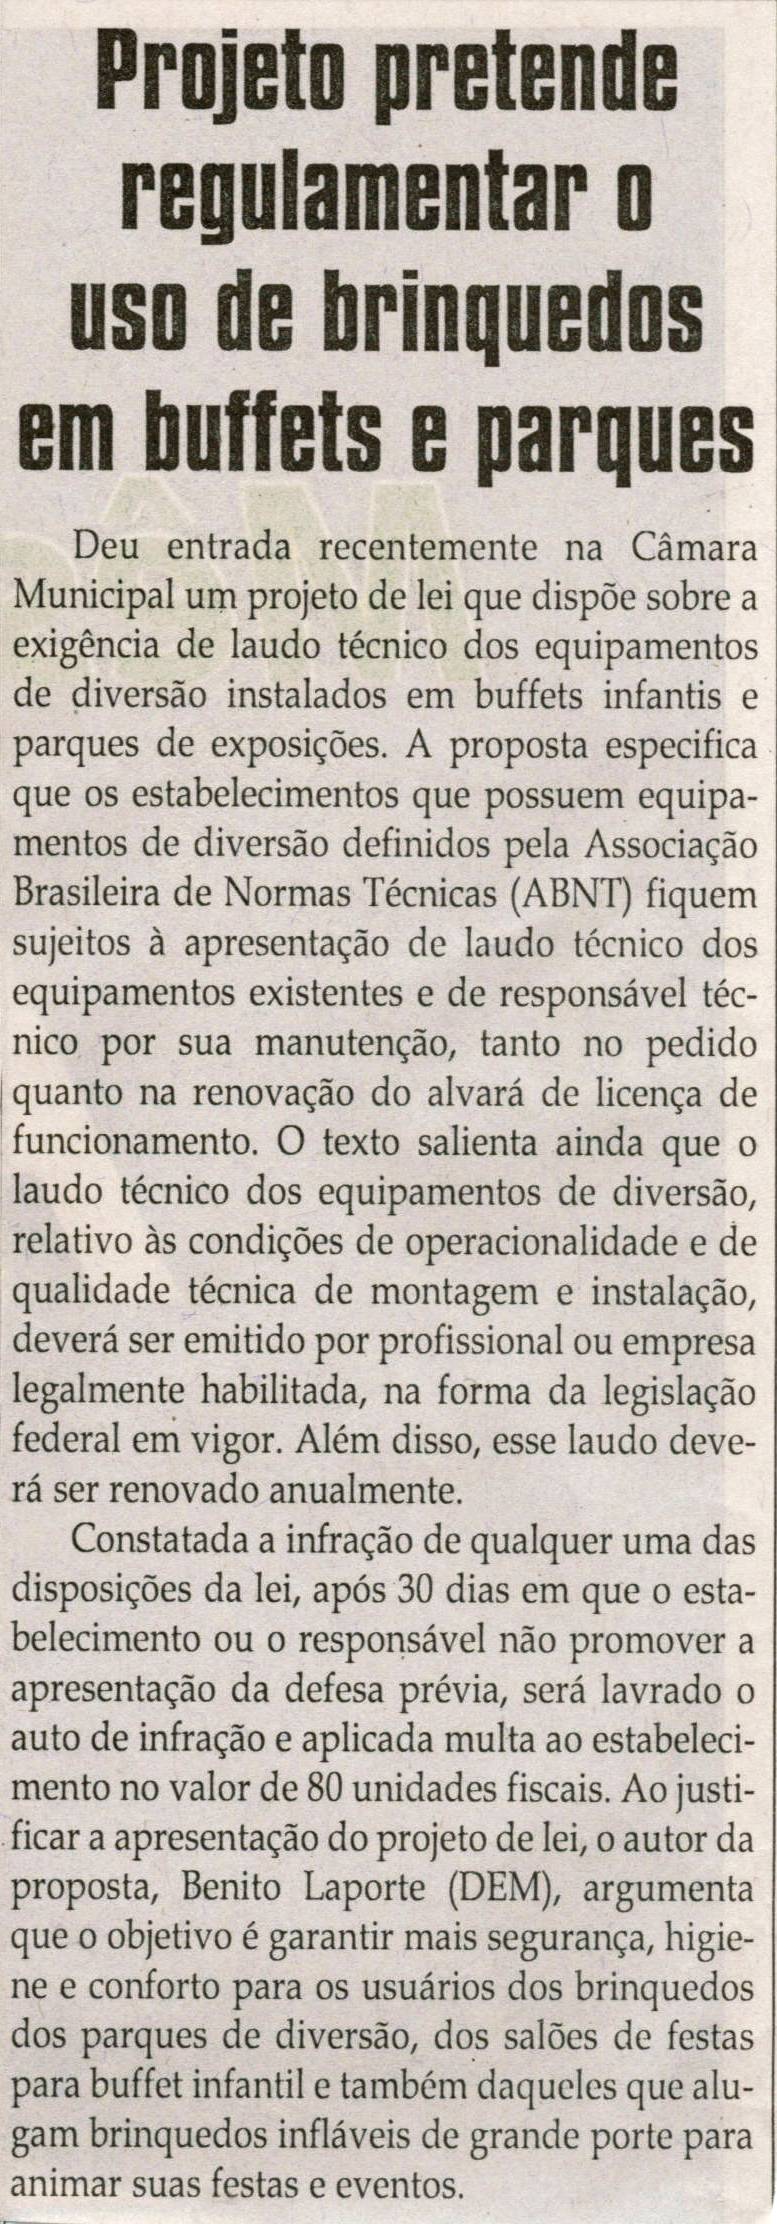 Projeto pretende regulamentar o uso de brinquedos em "buffets" e parques. Jornal Correio da Cidade, Conselheiro Lafaiete, 14 set. 2013, Política, p. 06.